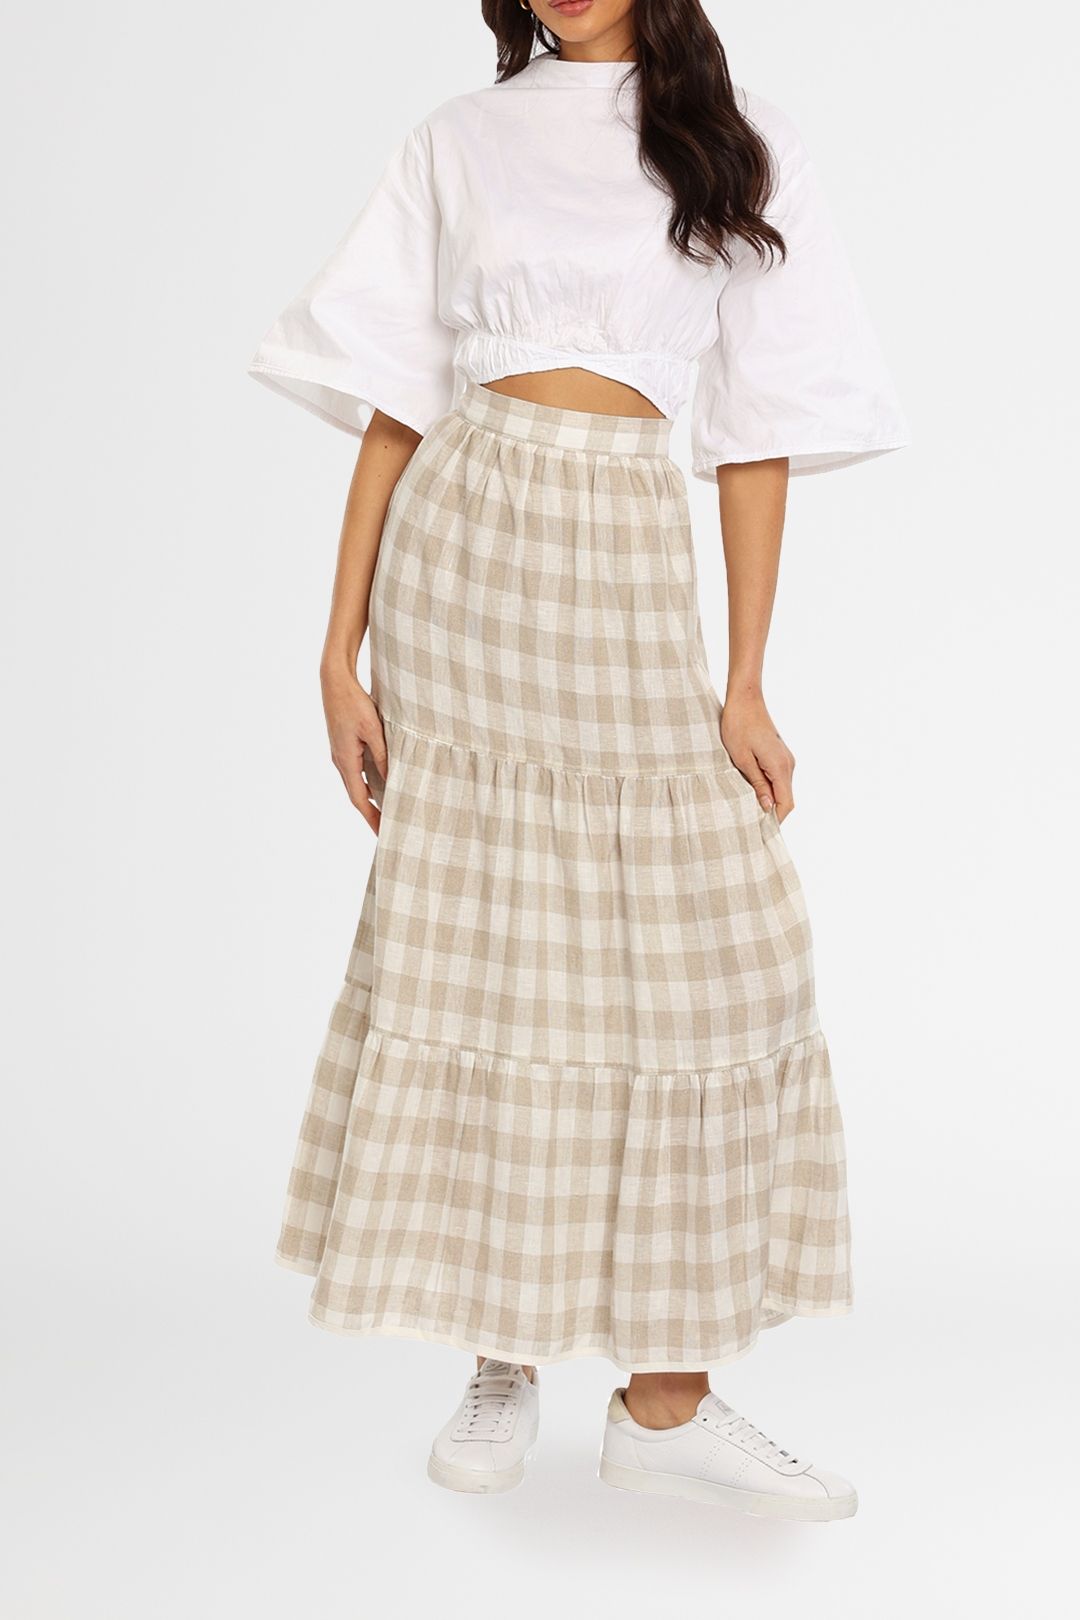 Dusty Skirt in Beige Marle